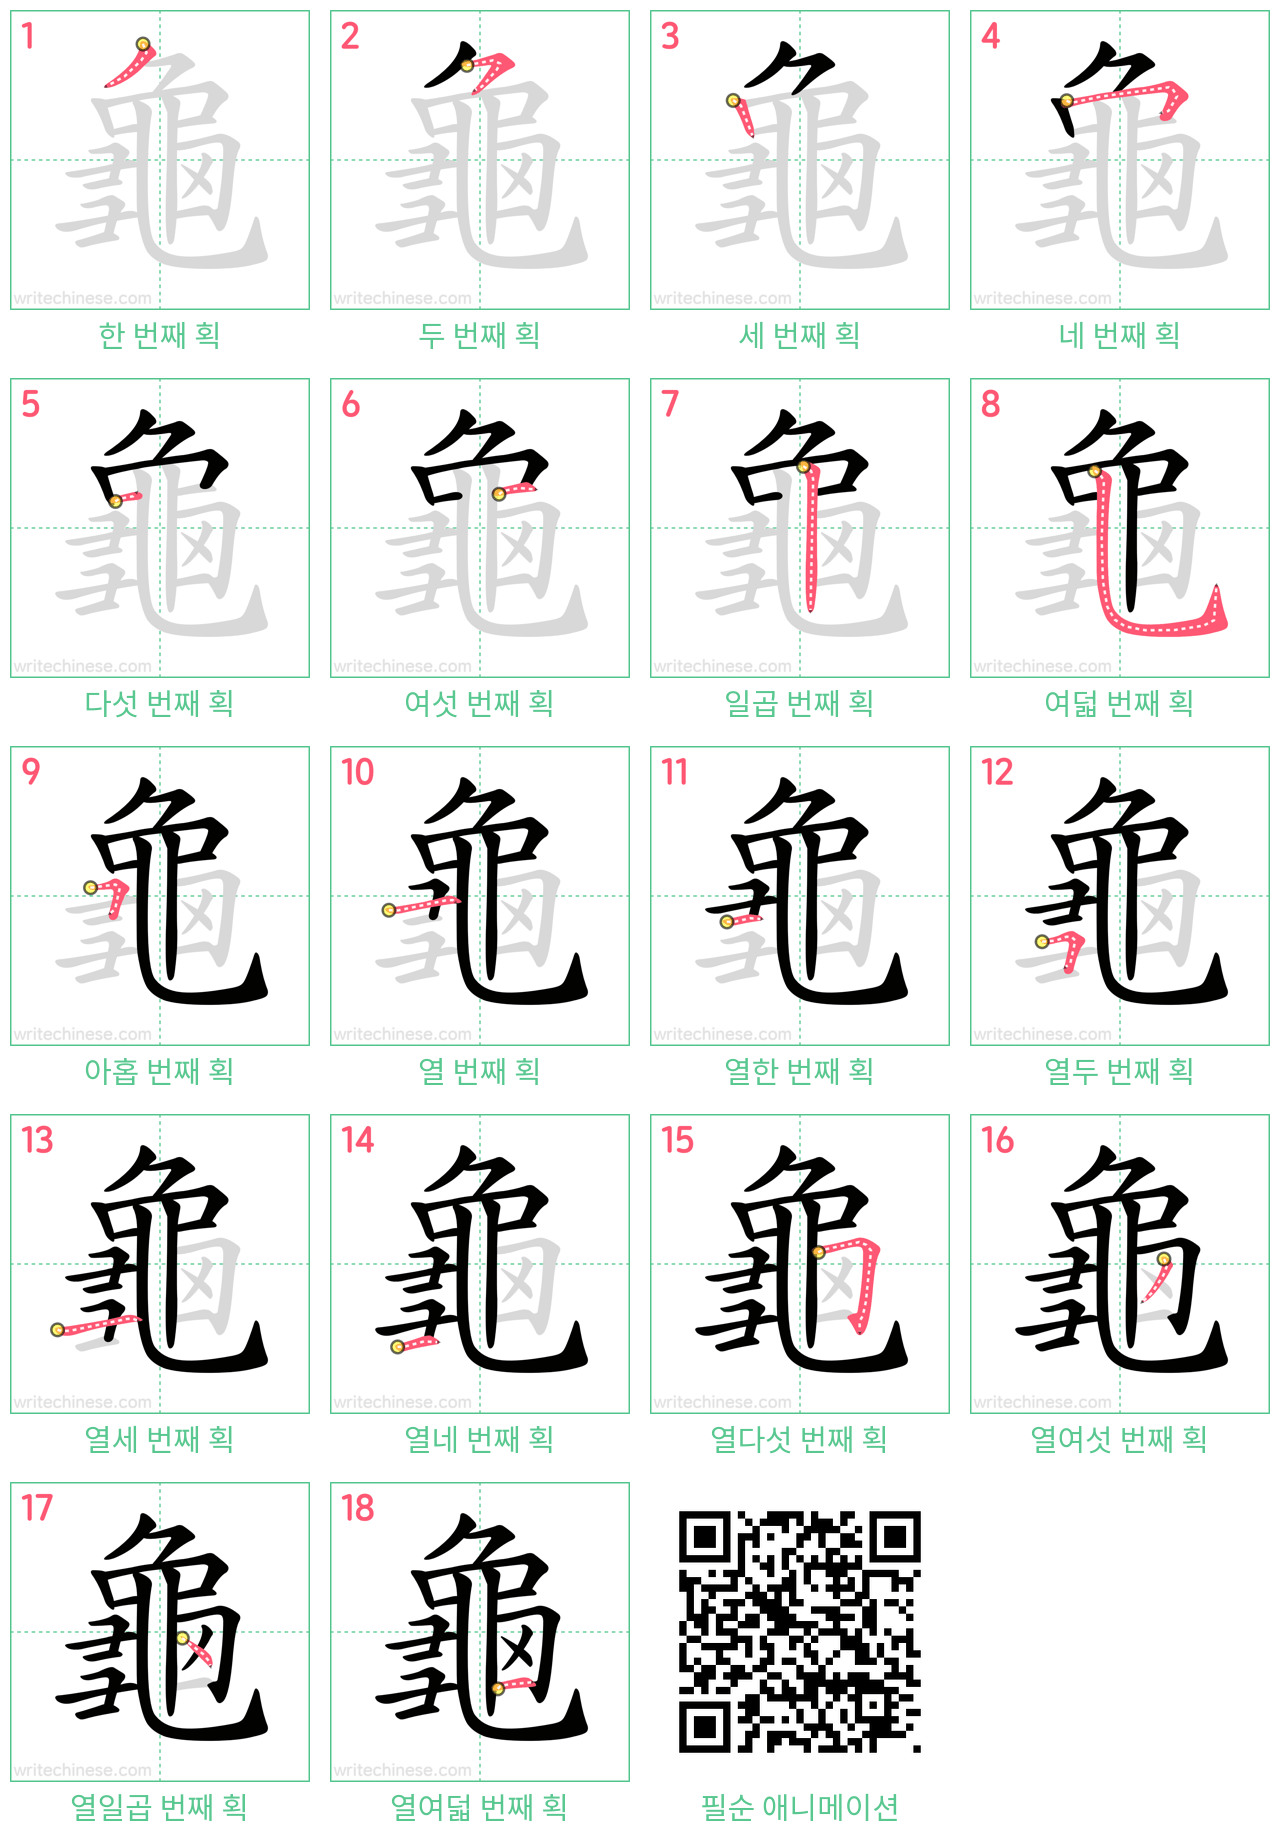 龜 step-by-step stroke order diagrams